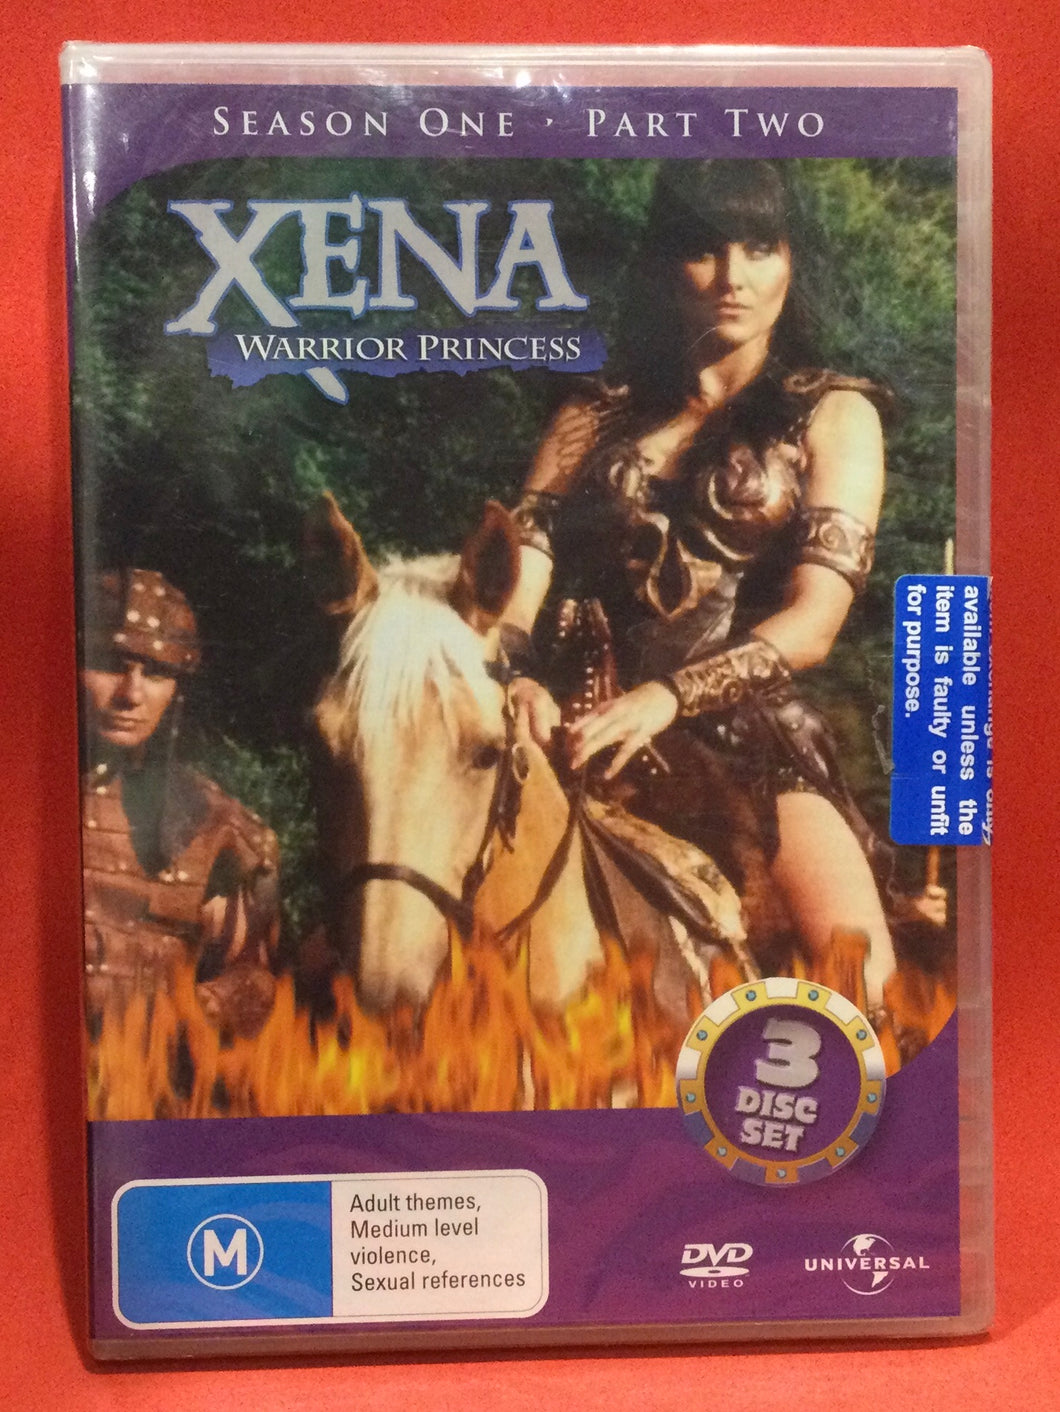 XENA WARRIOR PRINCESS - SEASON 1 PART 2 - 3 DVD DISCS (SEALED)